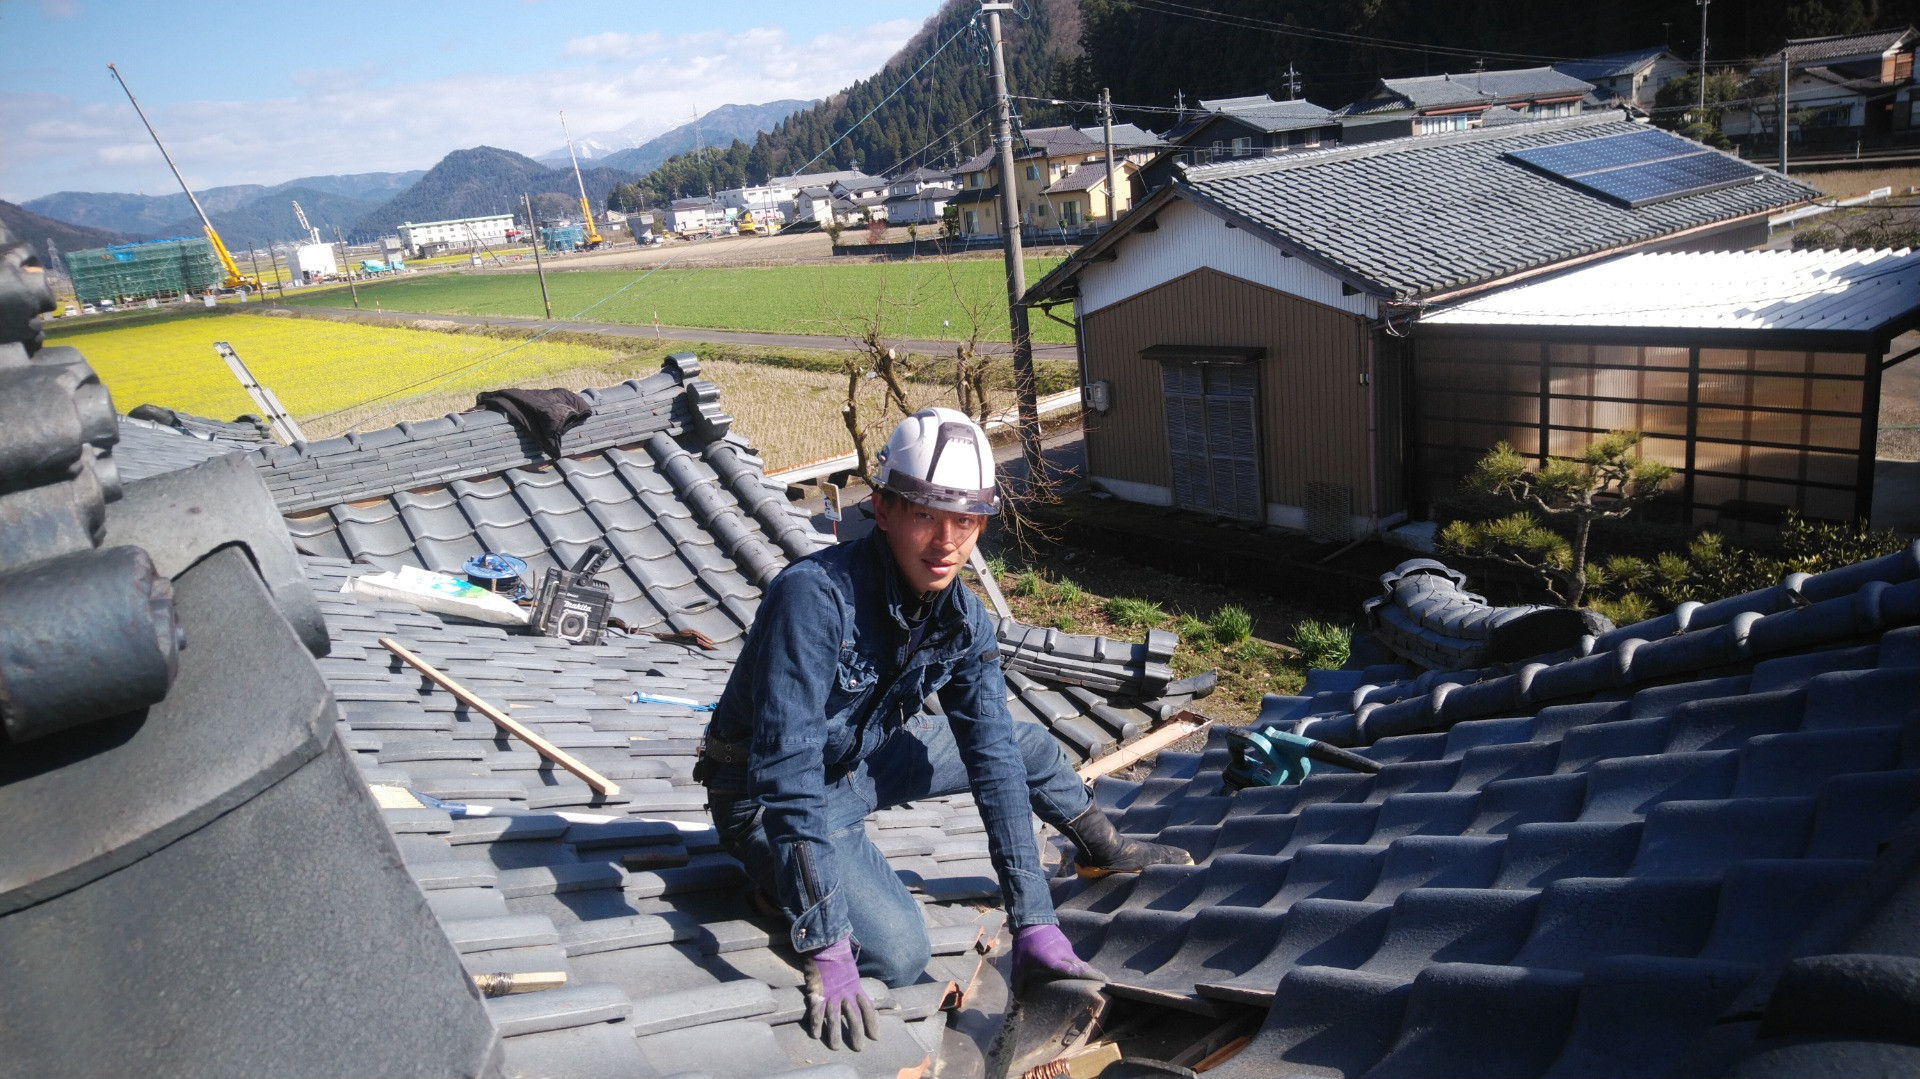 鯖江市で瓦屋根の修理に来ています。